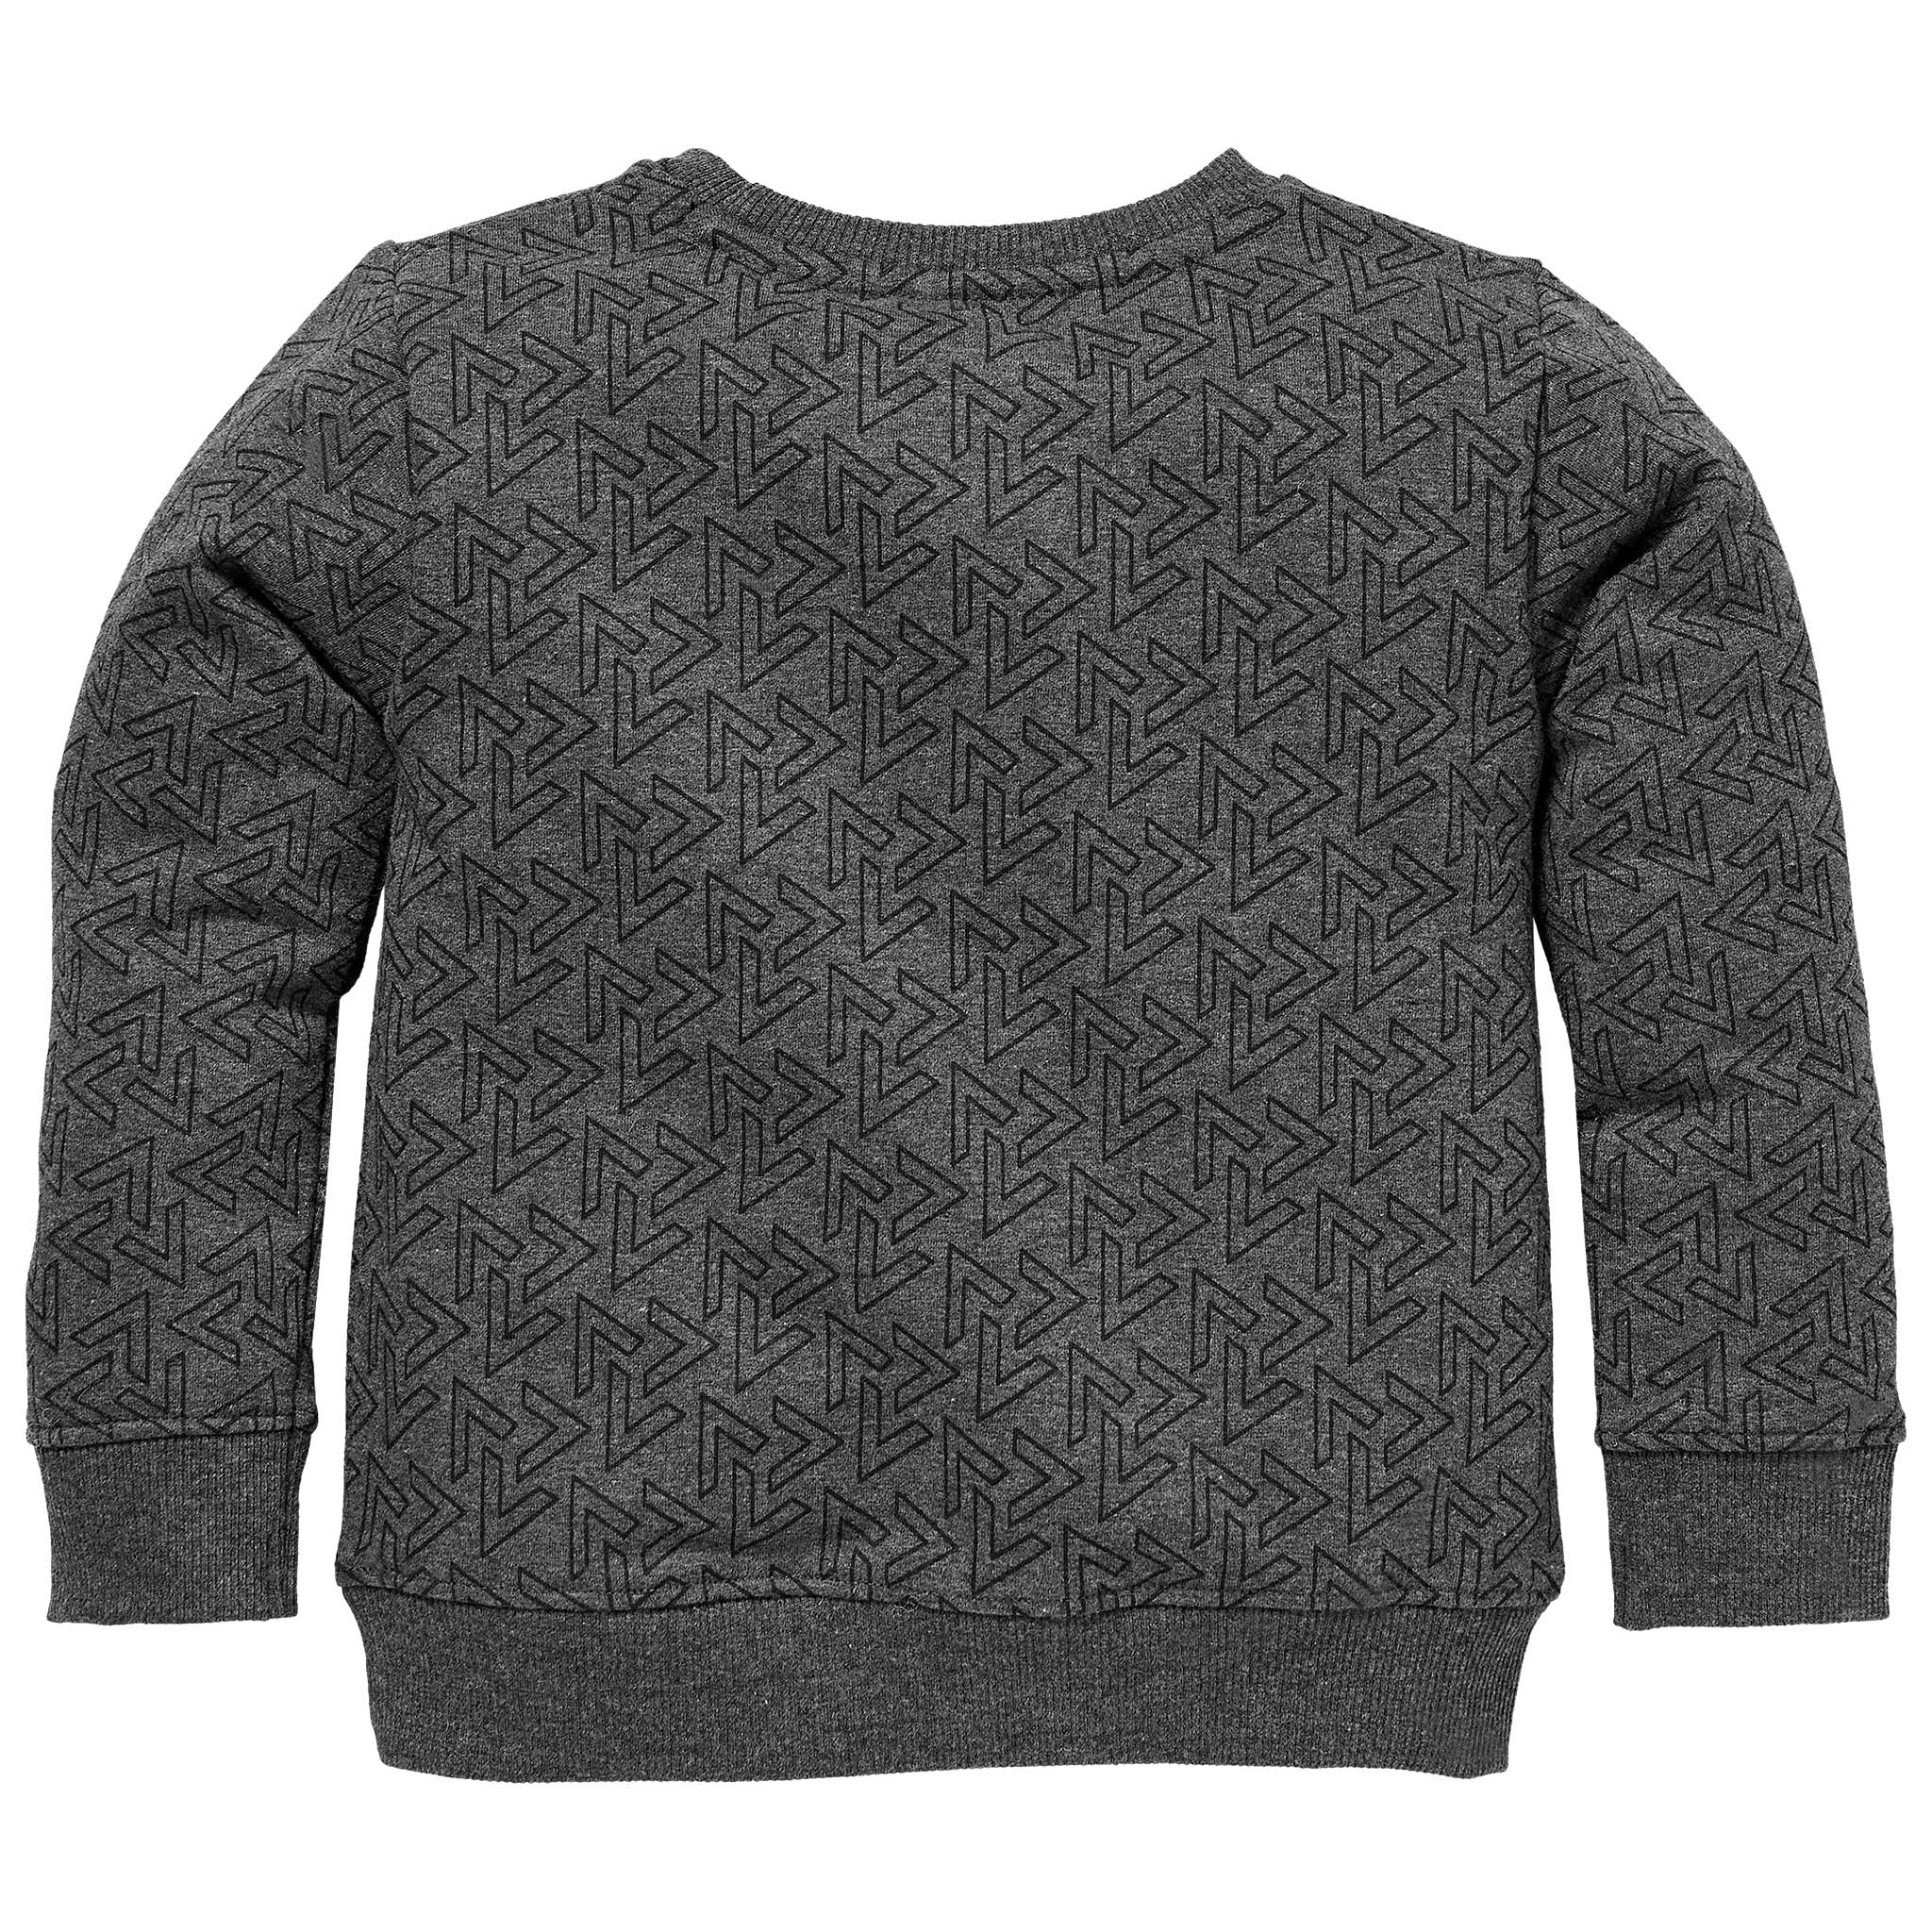 Jongens Sweater SID W212 van Little Levv in de kleur AOP Black Melee V in maat 116.